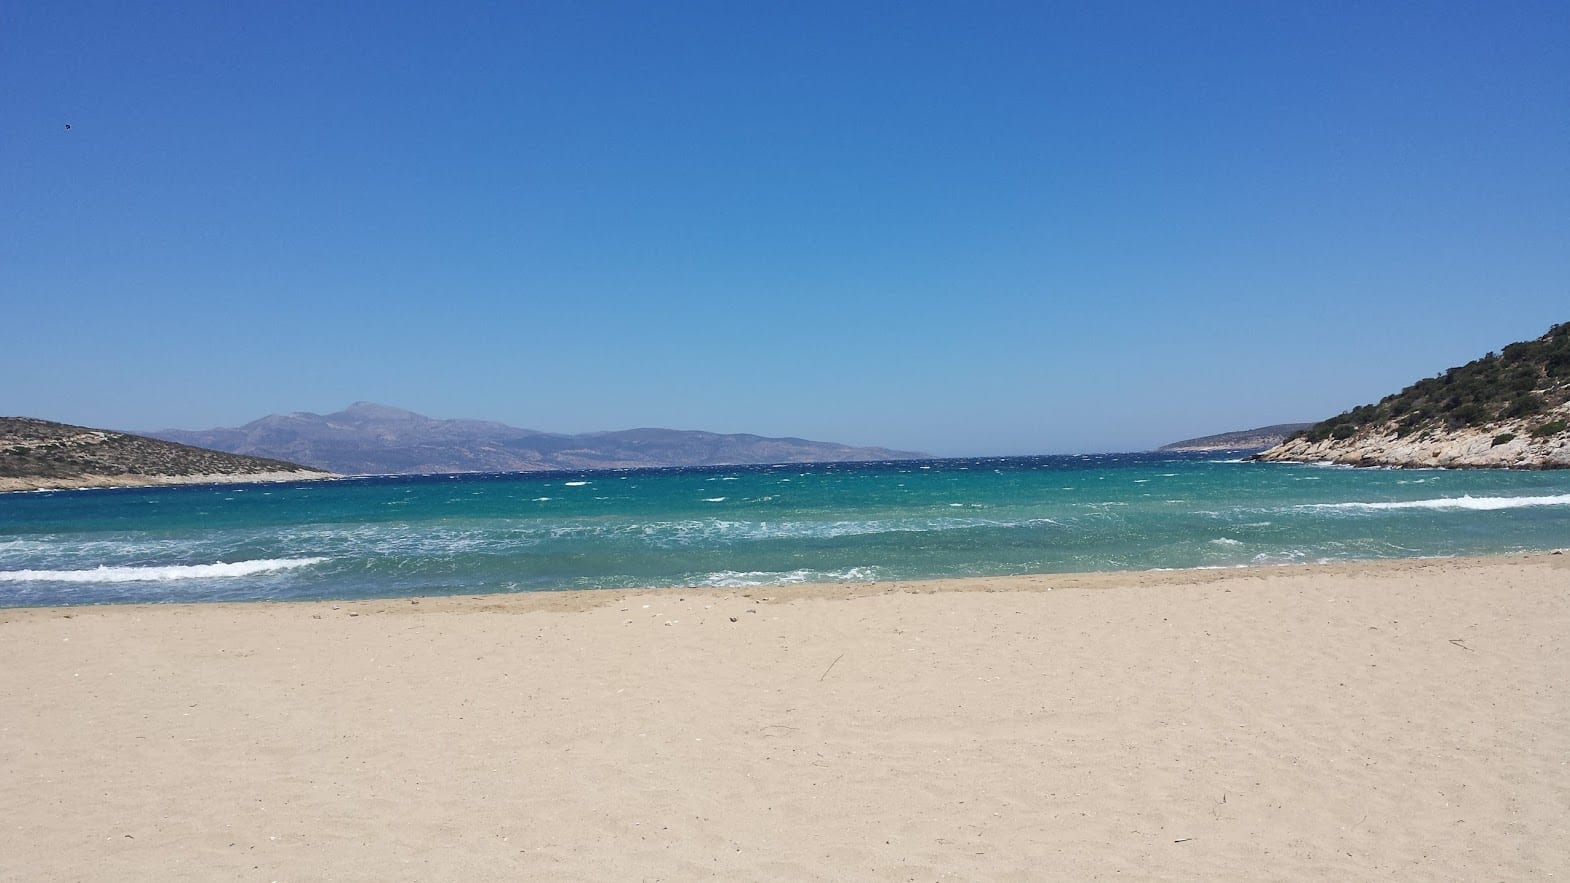 A perfect beach on Iraklia island in Greece